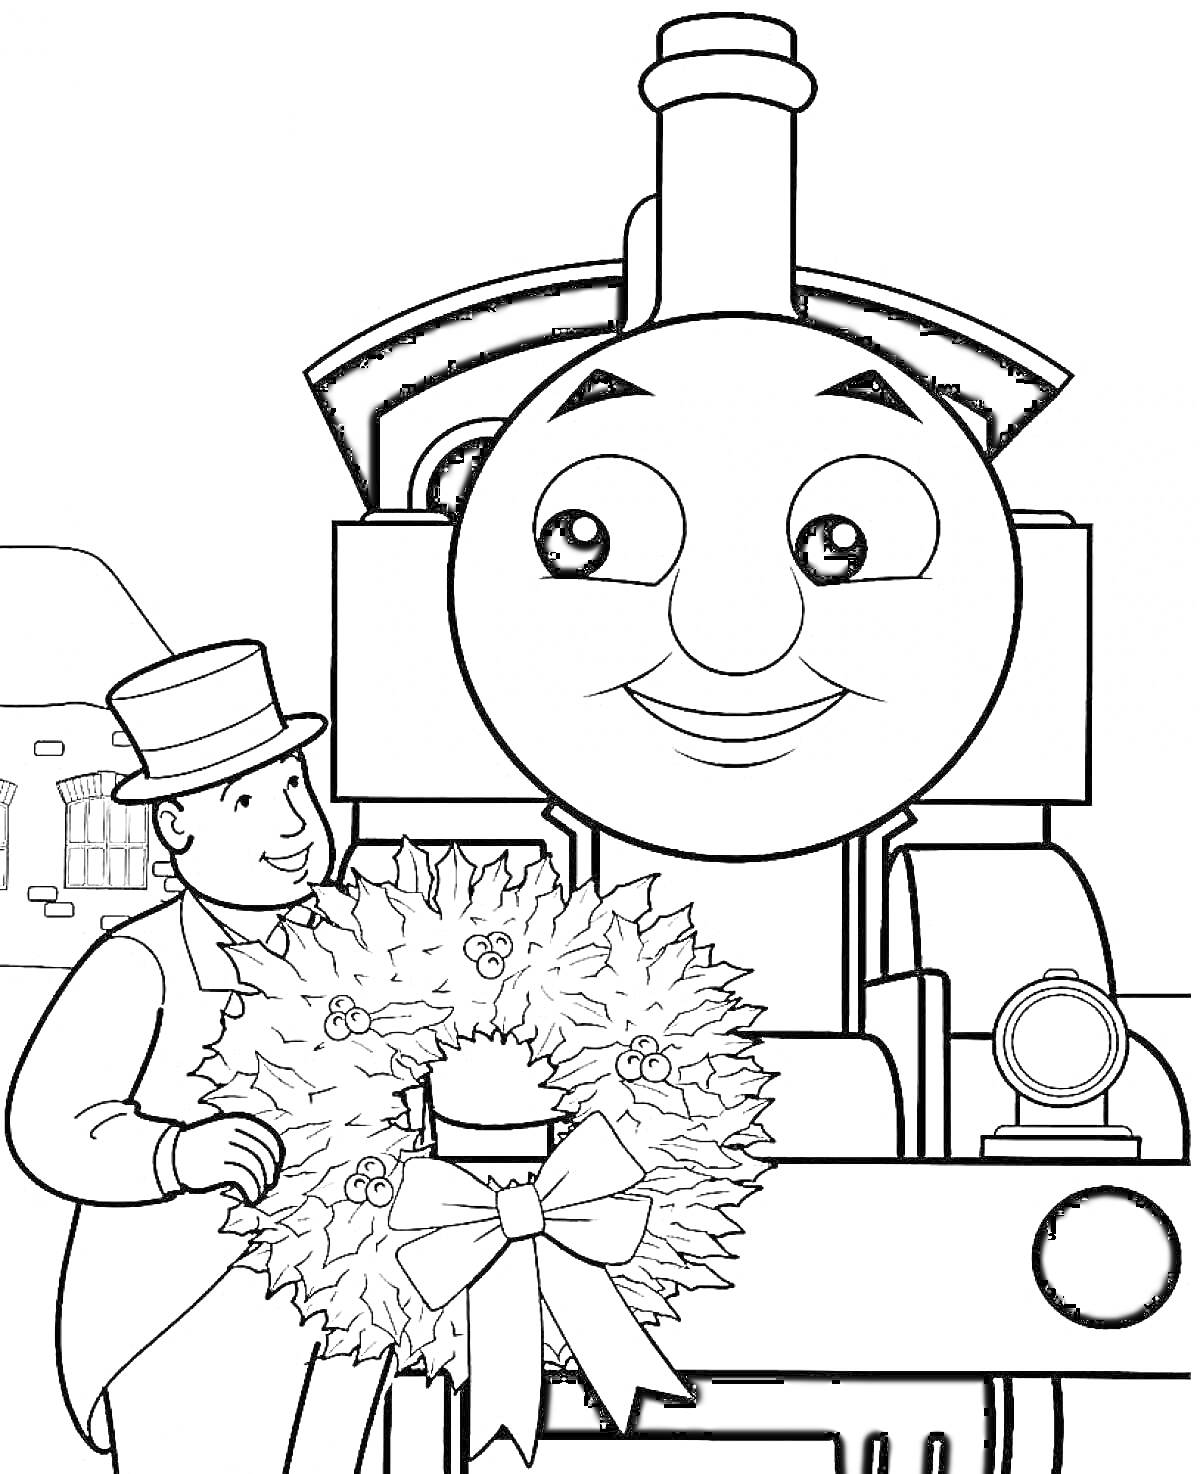 Паровозик Томас с новогодним венком и человеком в шляпе